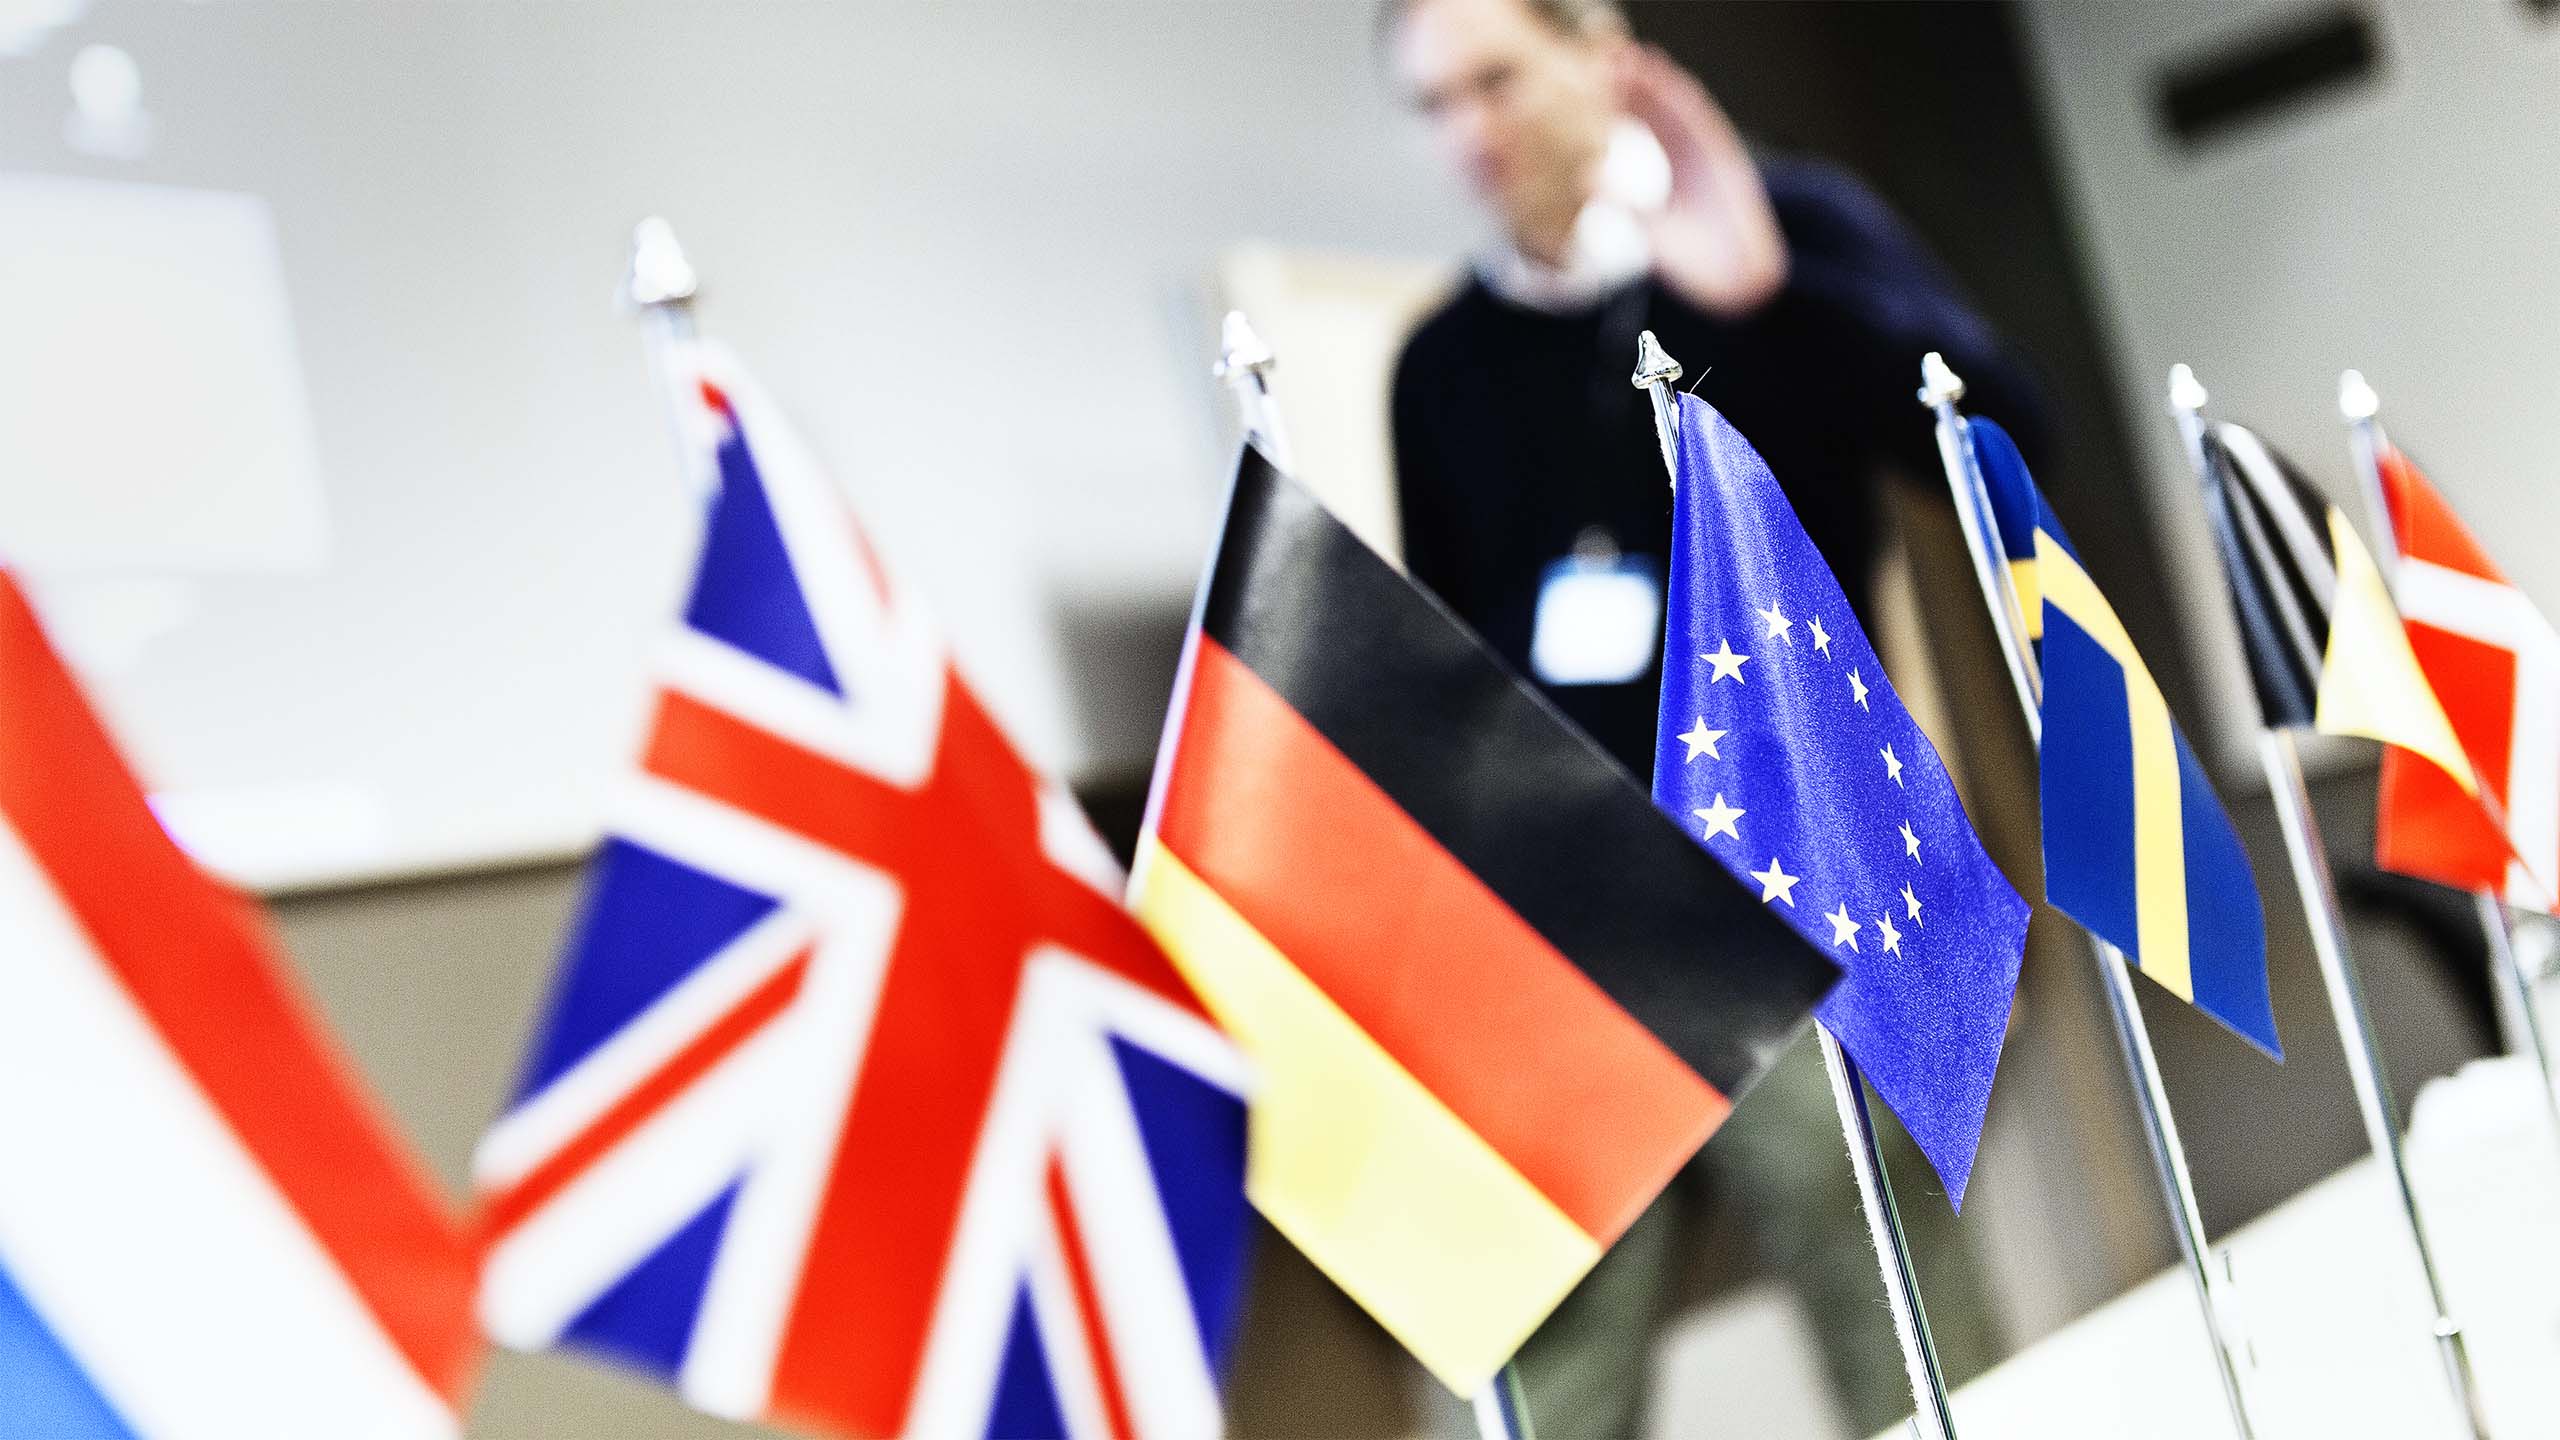 Mindre flaggstångar står uppradade på ett bord. Flaggor från Nederländerna, Storbritannien, Tyskland, EU, Sverige, Berlin och Danmark.